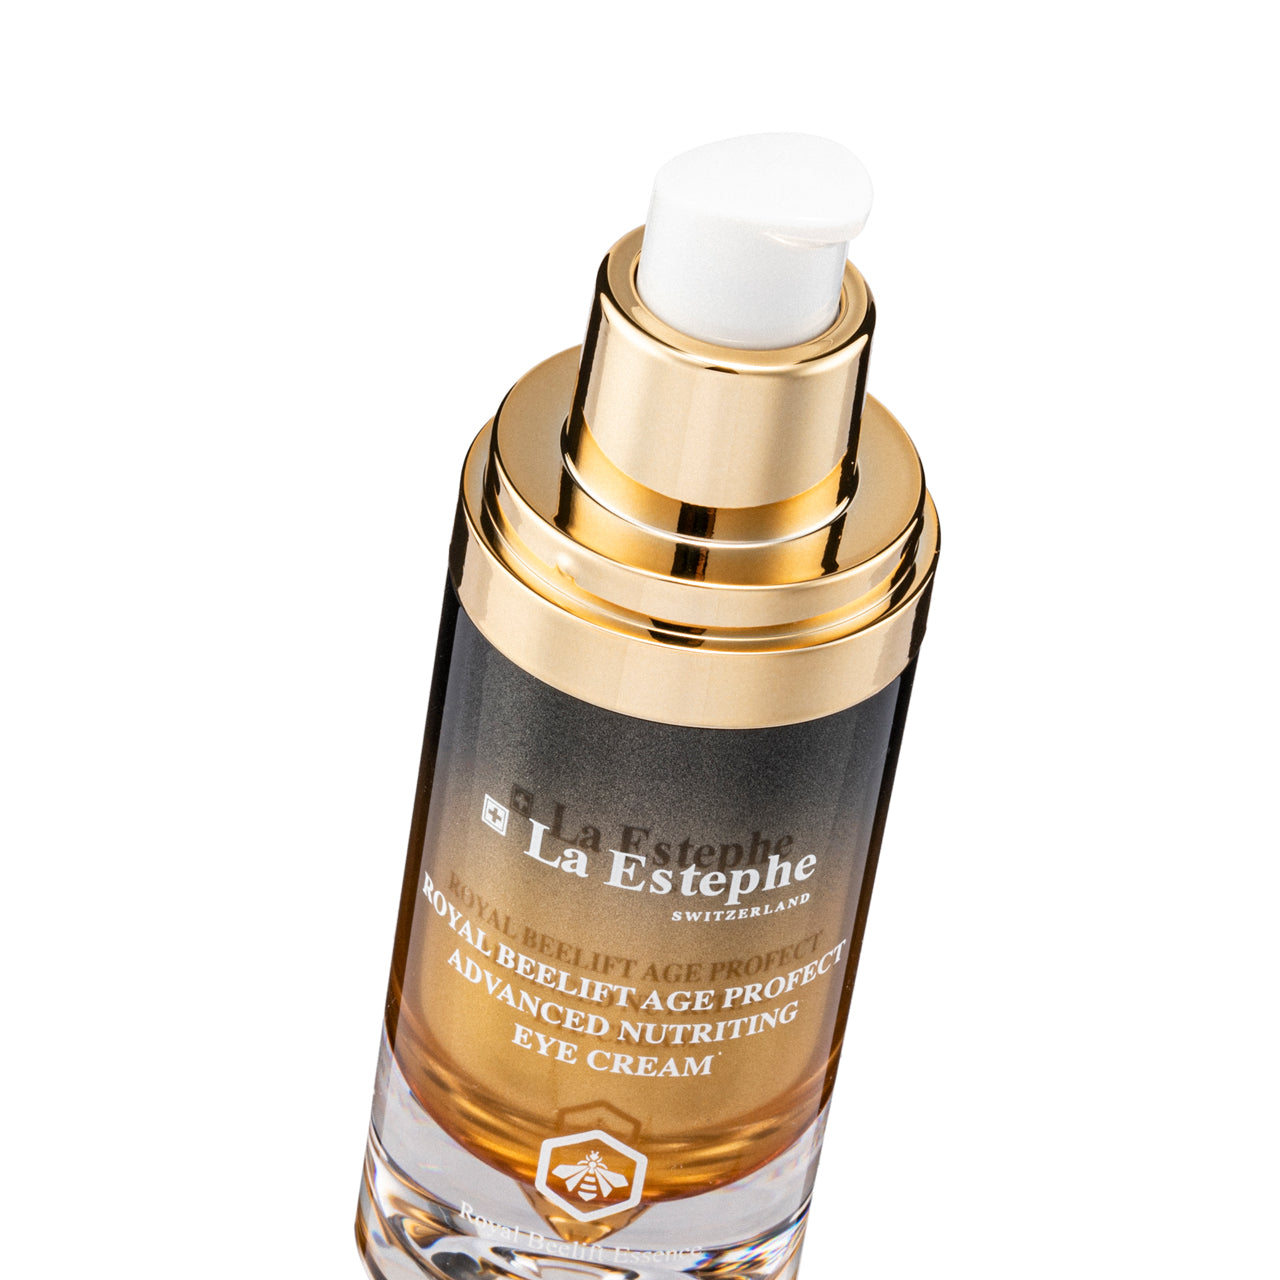 La Estephe Royal Beelift Age Advanced Nutriting Eye Cream 15ml | Sasa Global eShop